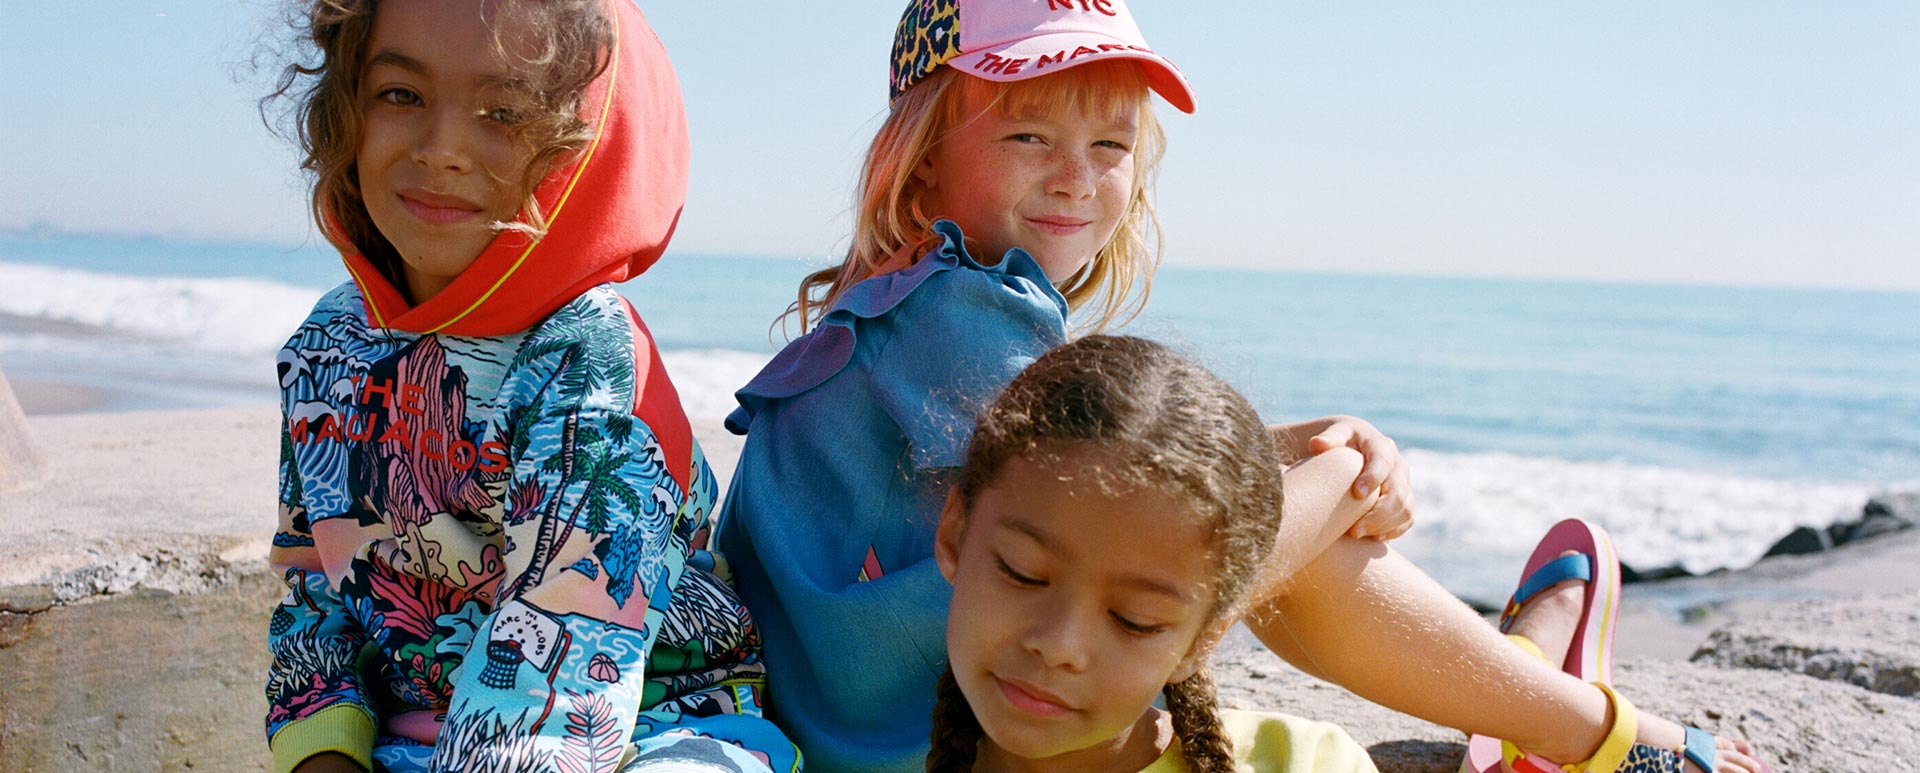 Vêtements de luxe pour enfants, filles et garçons, de la marque Marc Jacobs